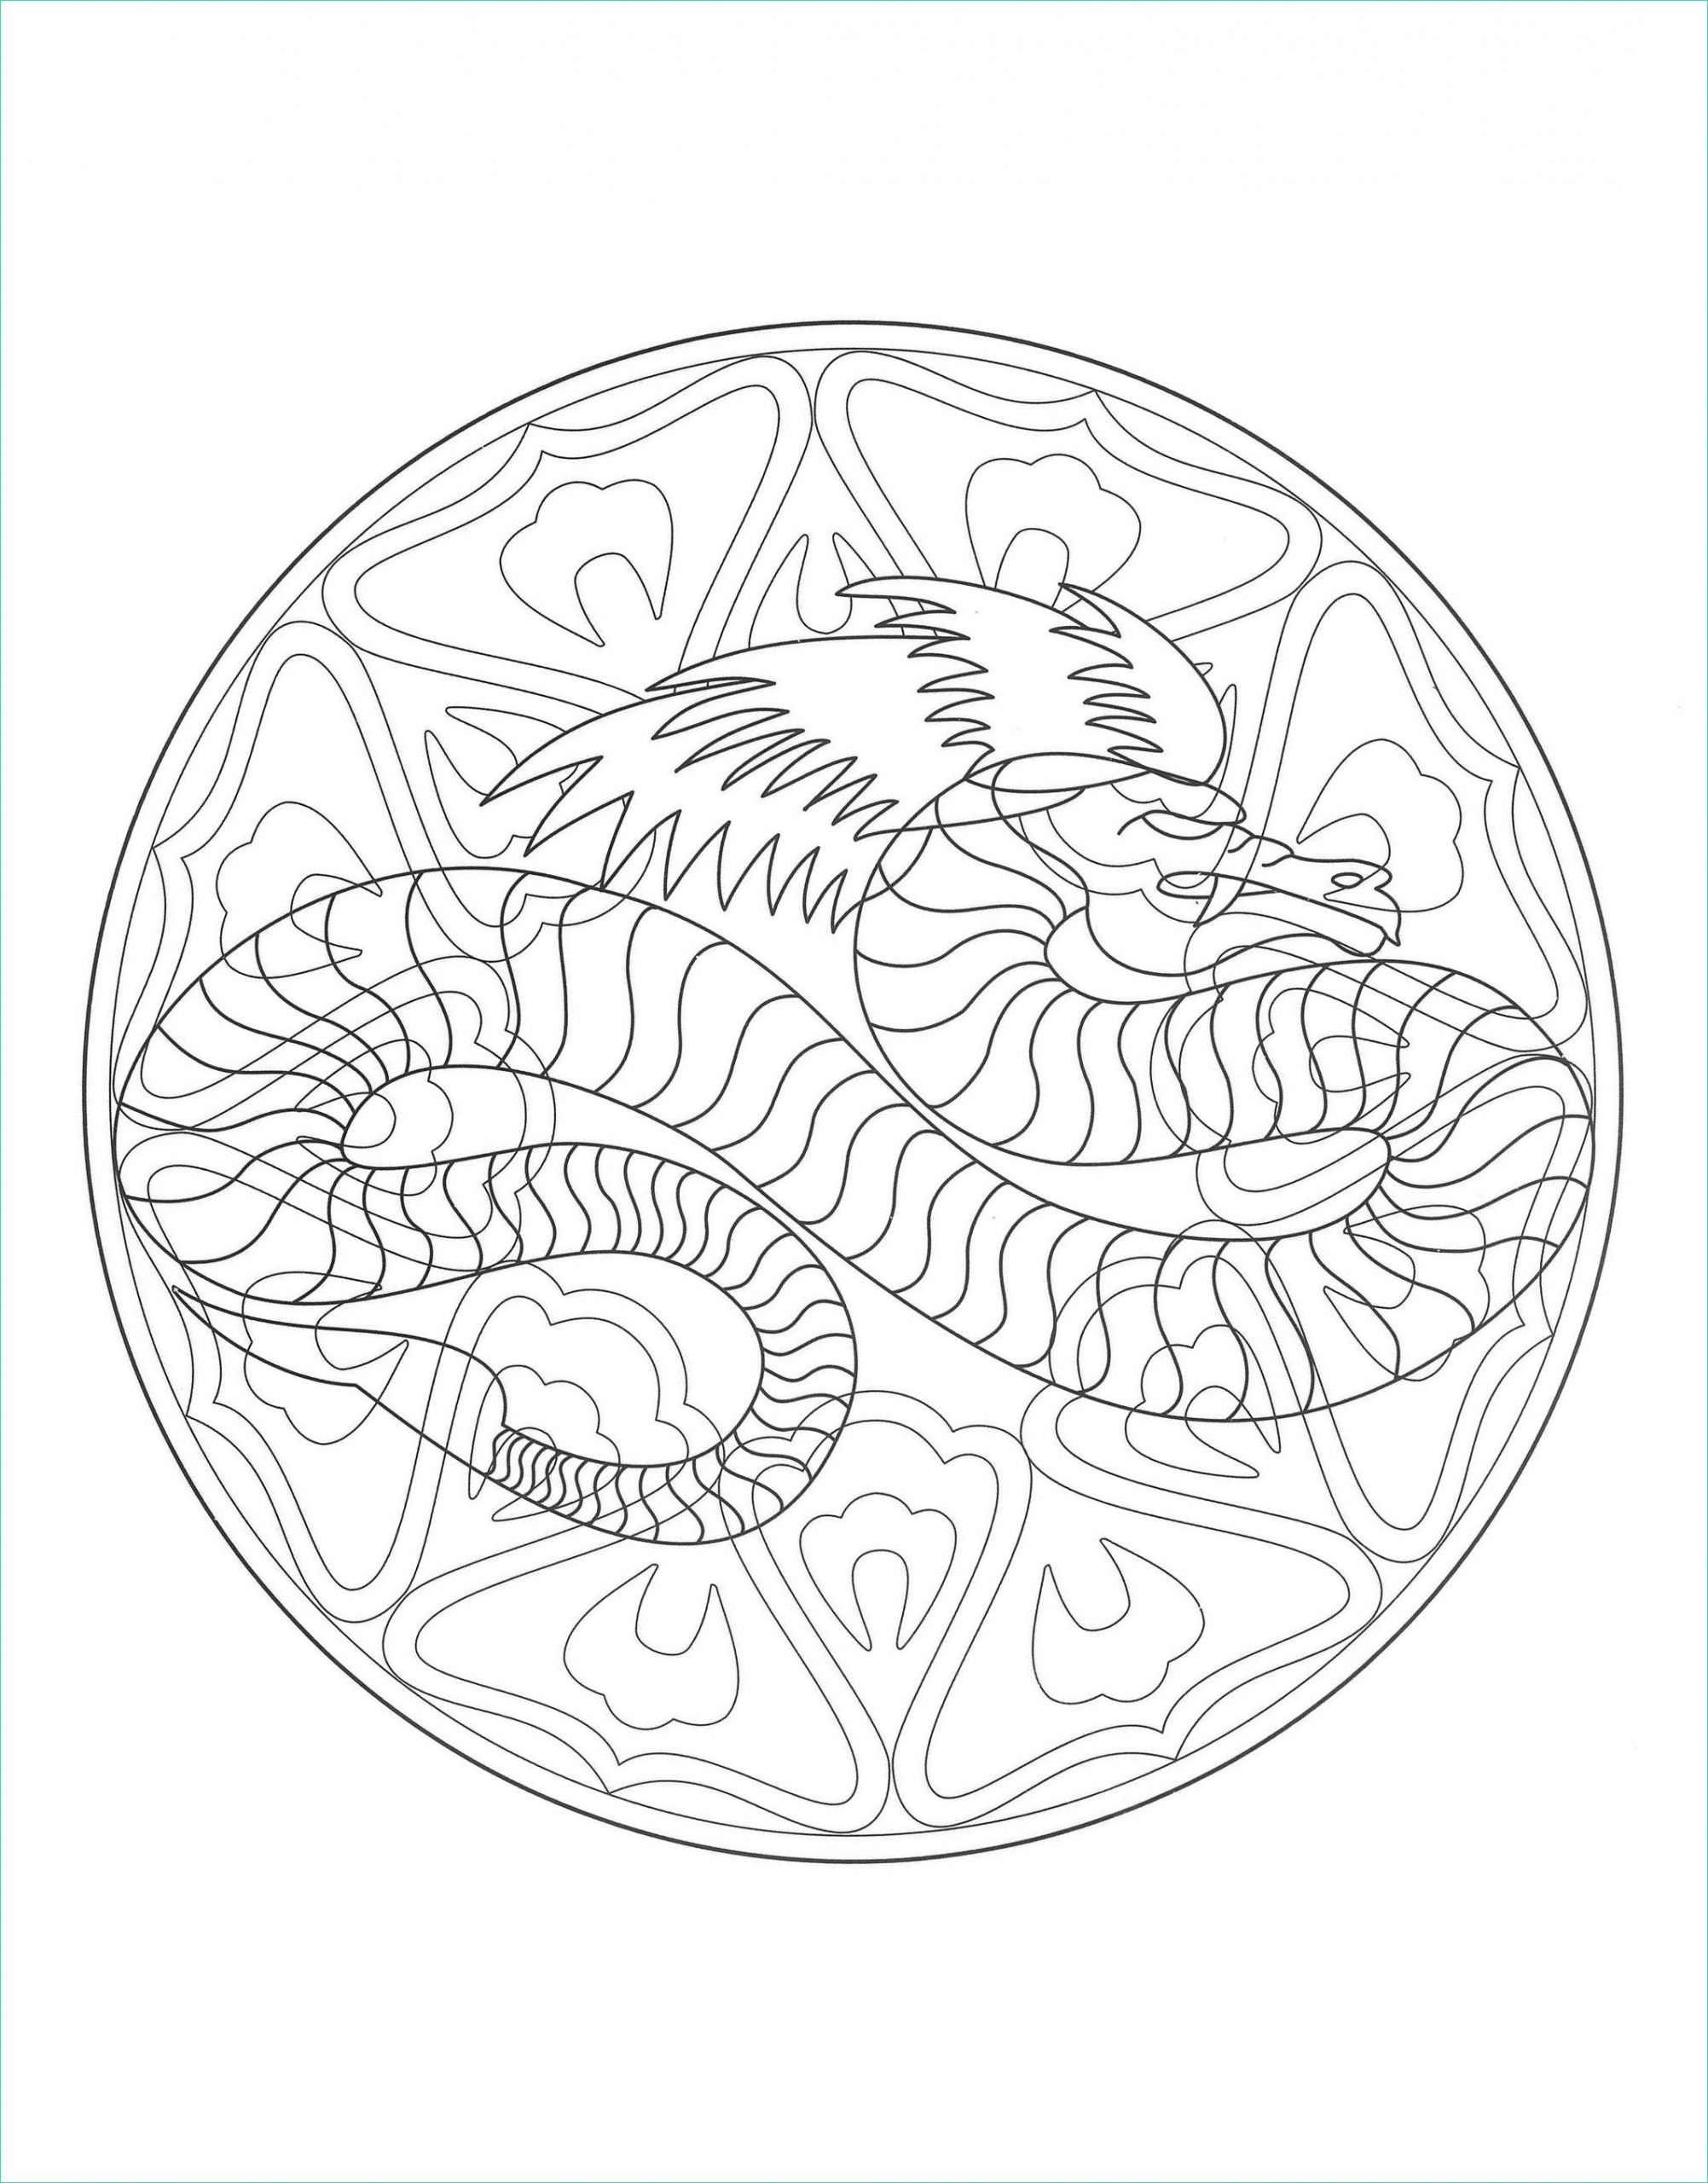 Mandala à Imprimer Difficile Dragon Inspirant Photographie Mandala Dragon 4 M&amp;alas Adult Coloring Pages